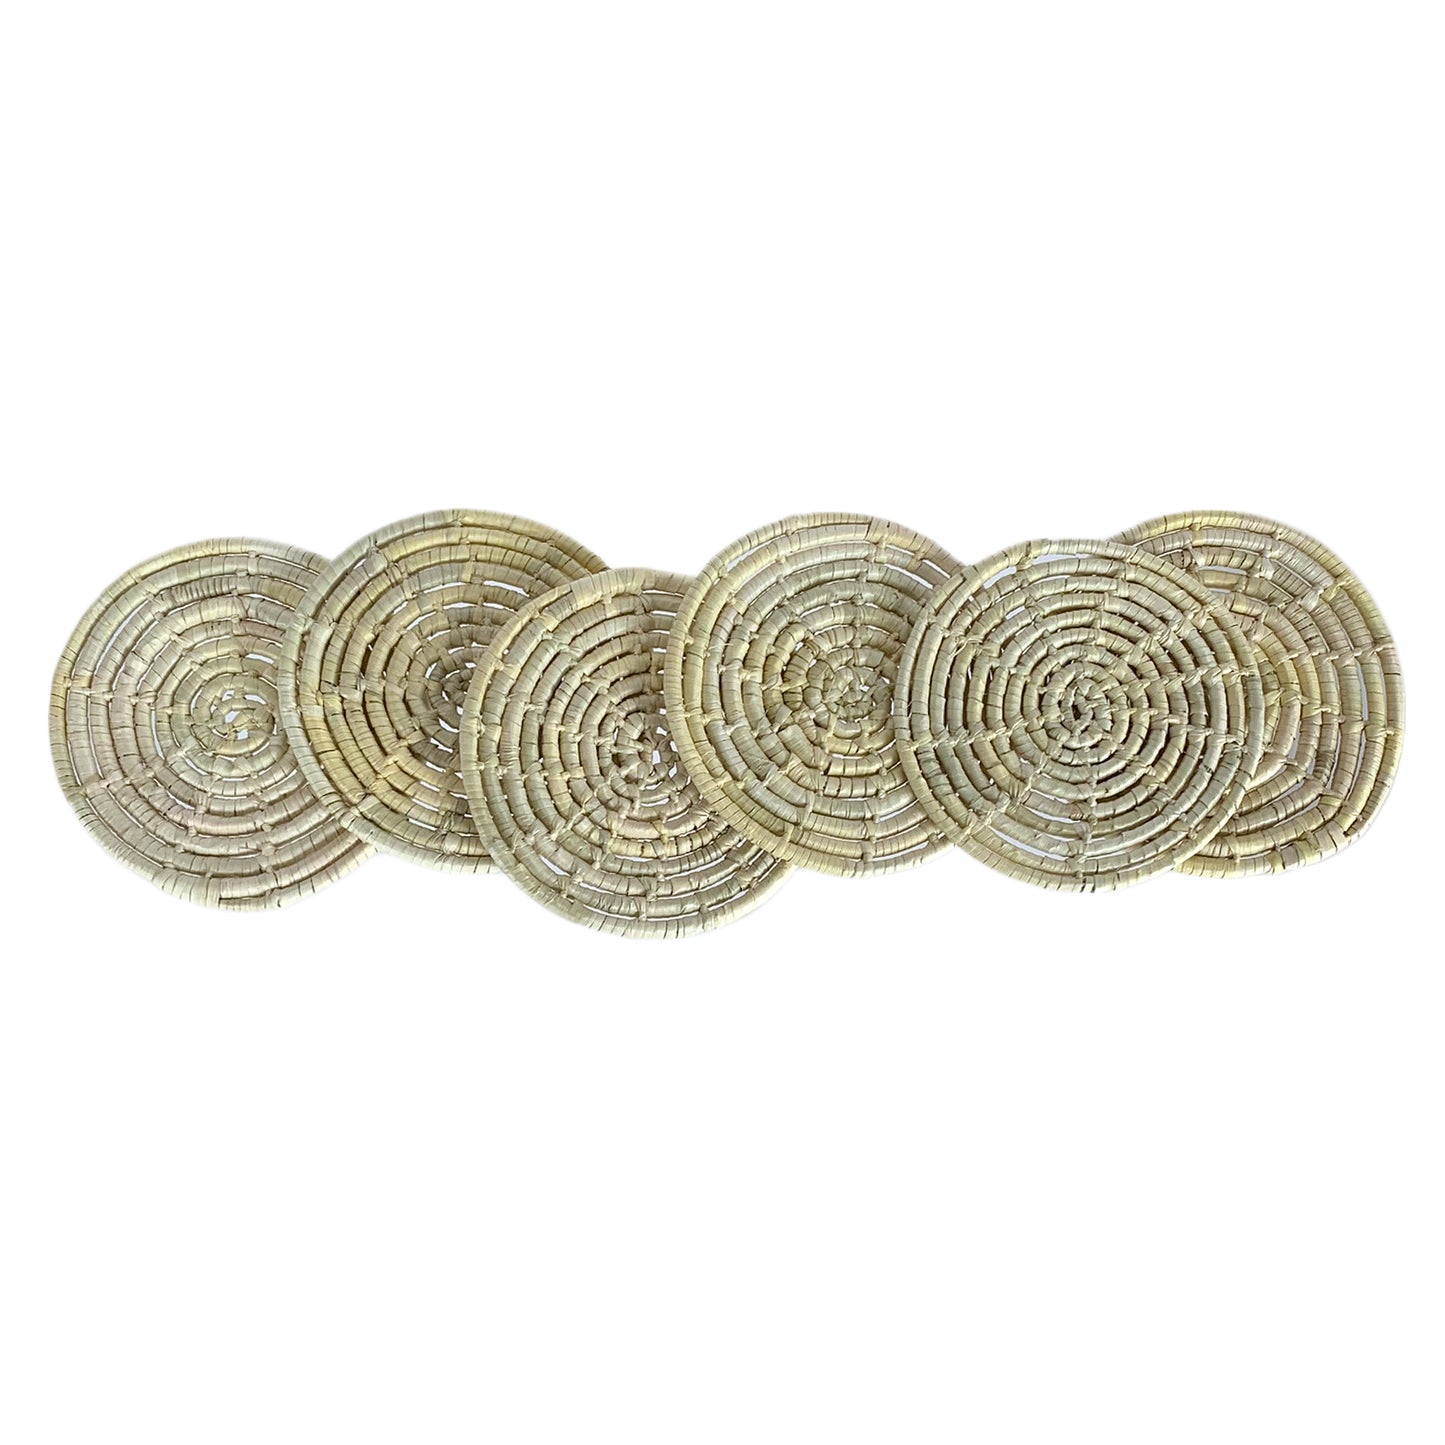 Posavasos de fibra de palma tejidos a mano de México (se venden individualmente)